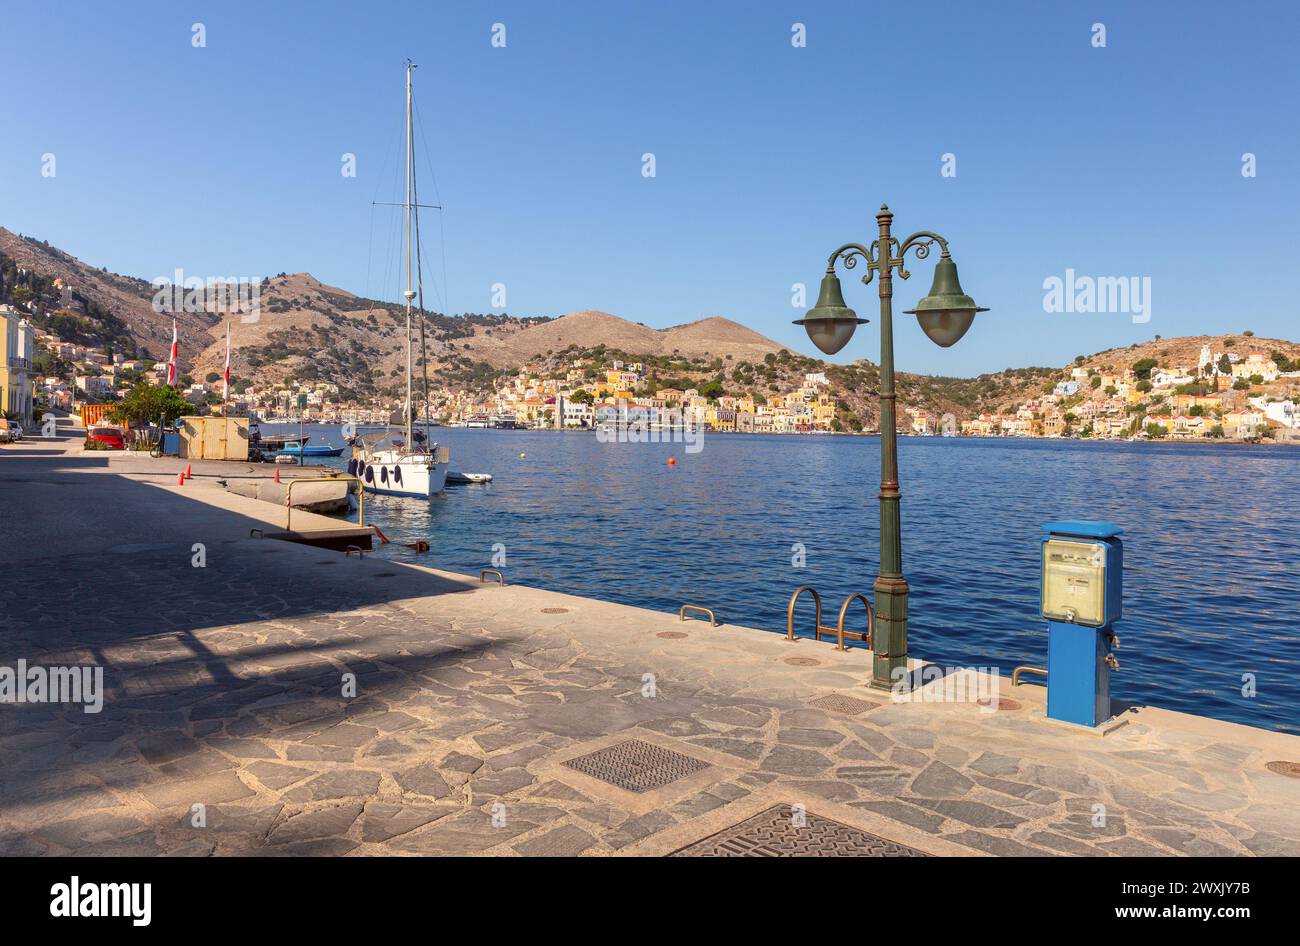 Vista delle case tradizionali colorate e delle barche da pesca nel villaggio di pescatori Symi in una giornata di sole. Grecia. Dodecaneso. Foto Stock